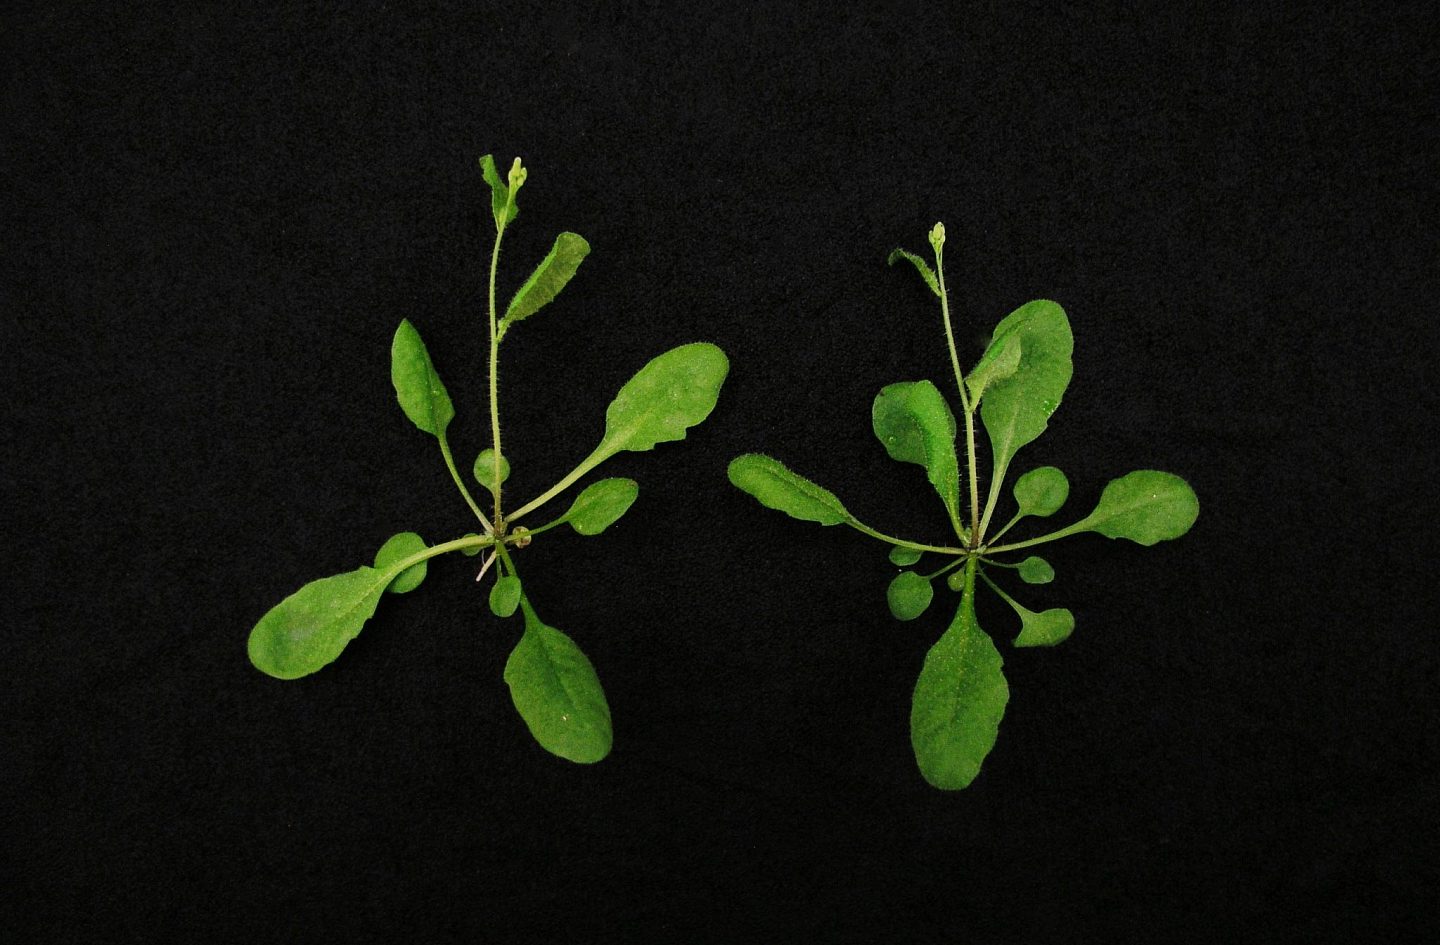 新CRISPR/Cas9植物技术将能提高农业产量并抵御气候变化影响 - 1